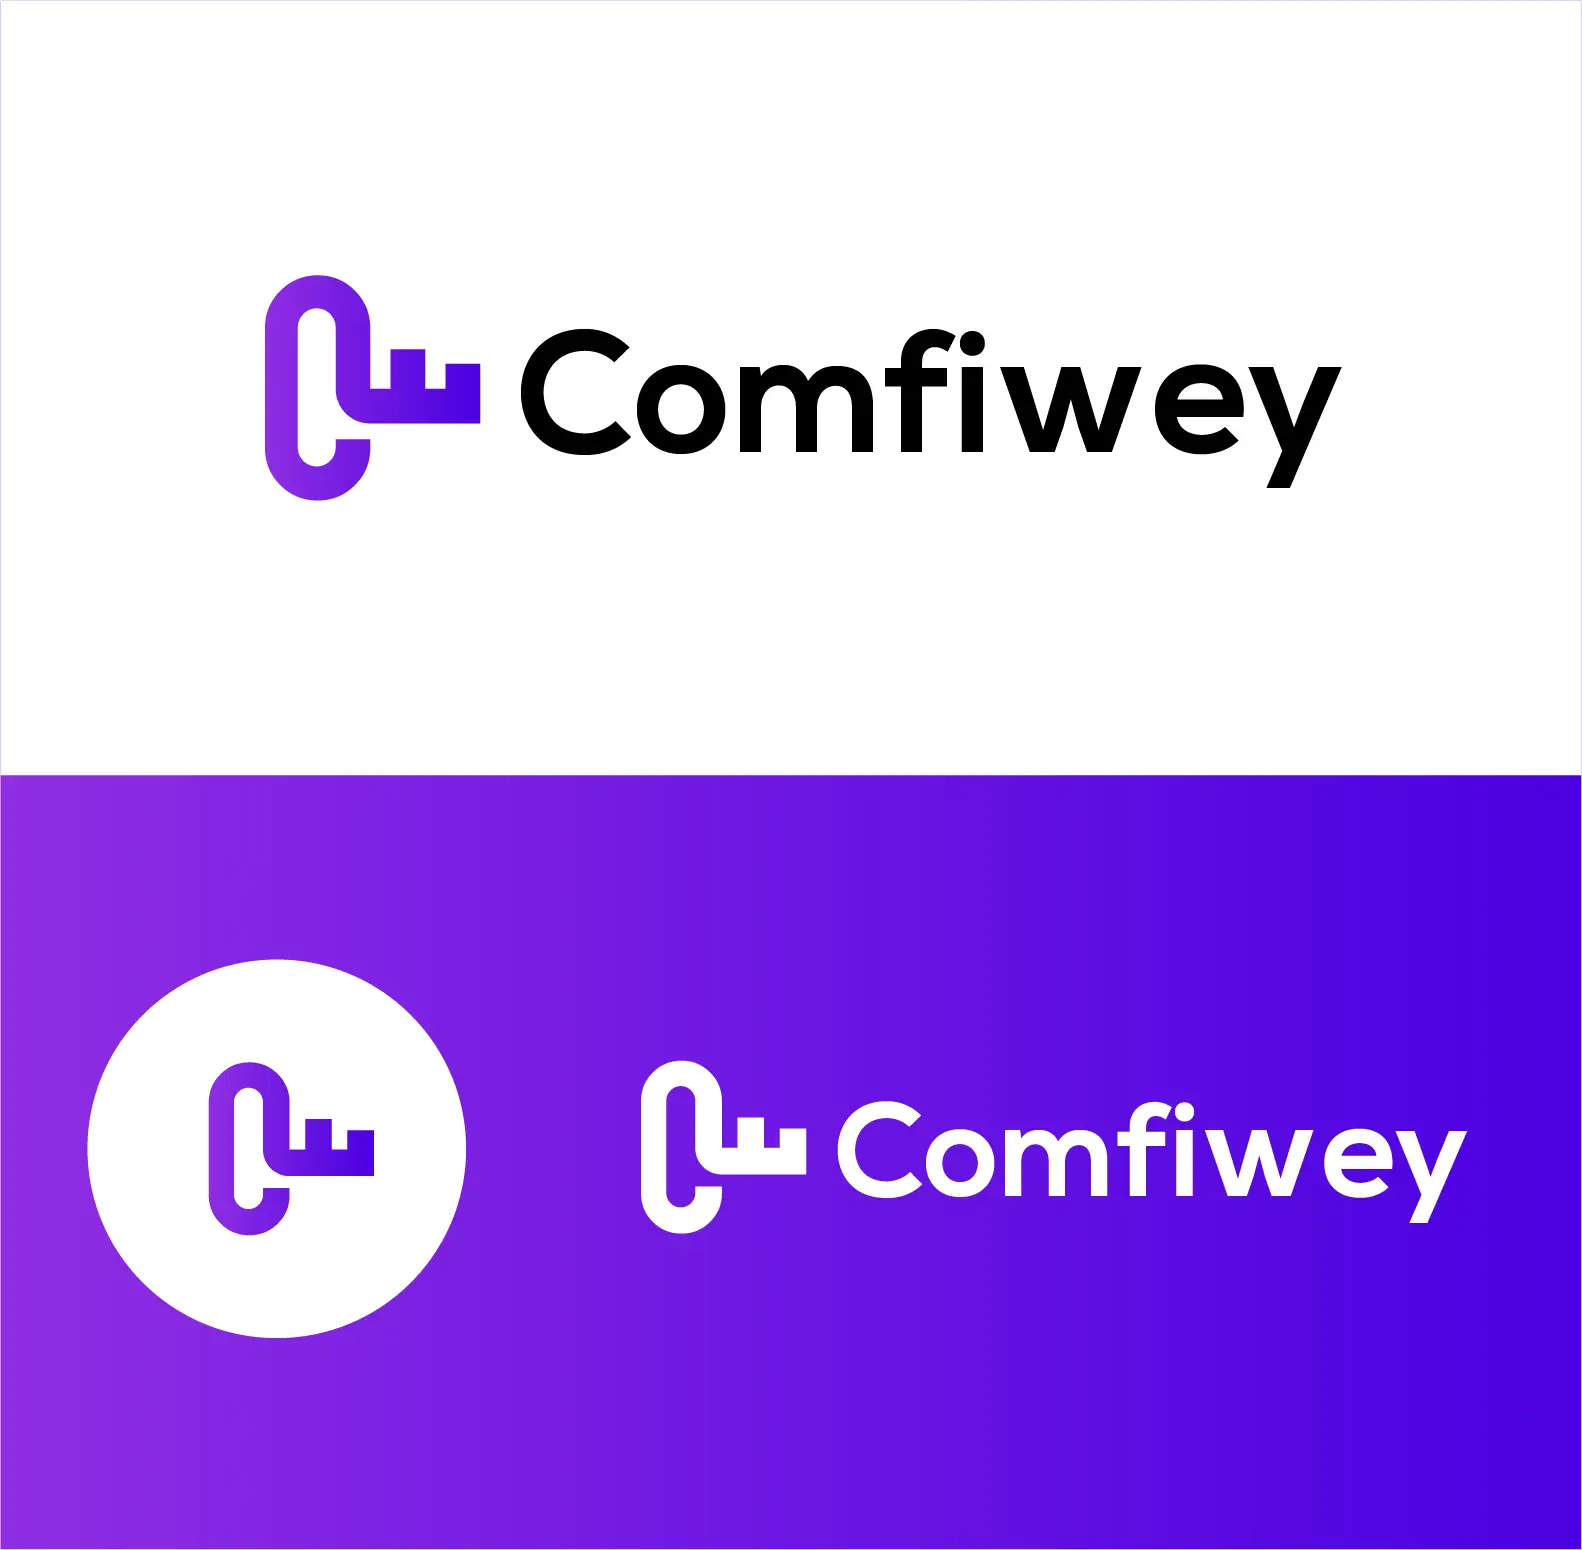 comfiwey-logo-design.jpg